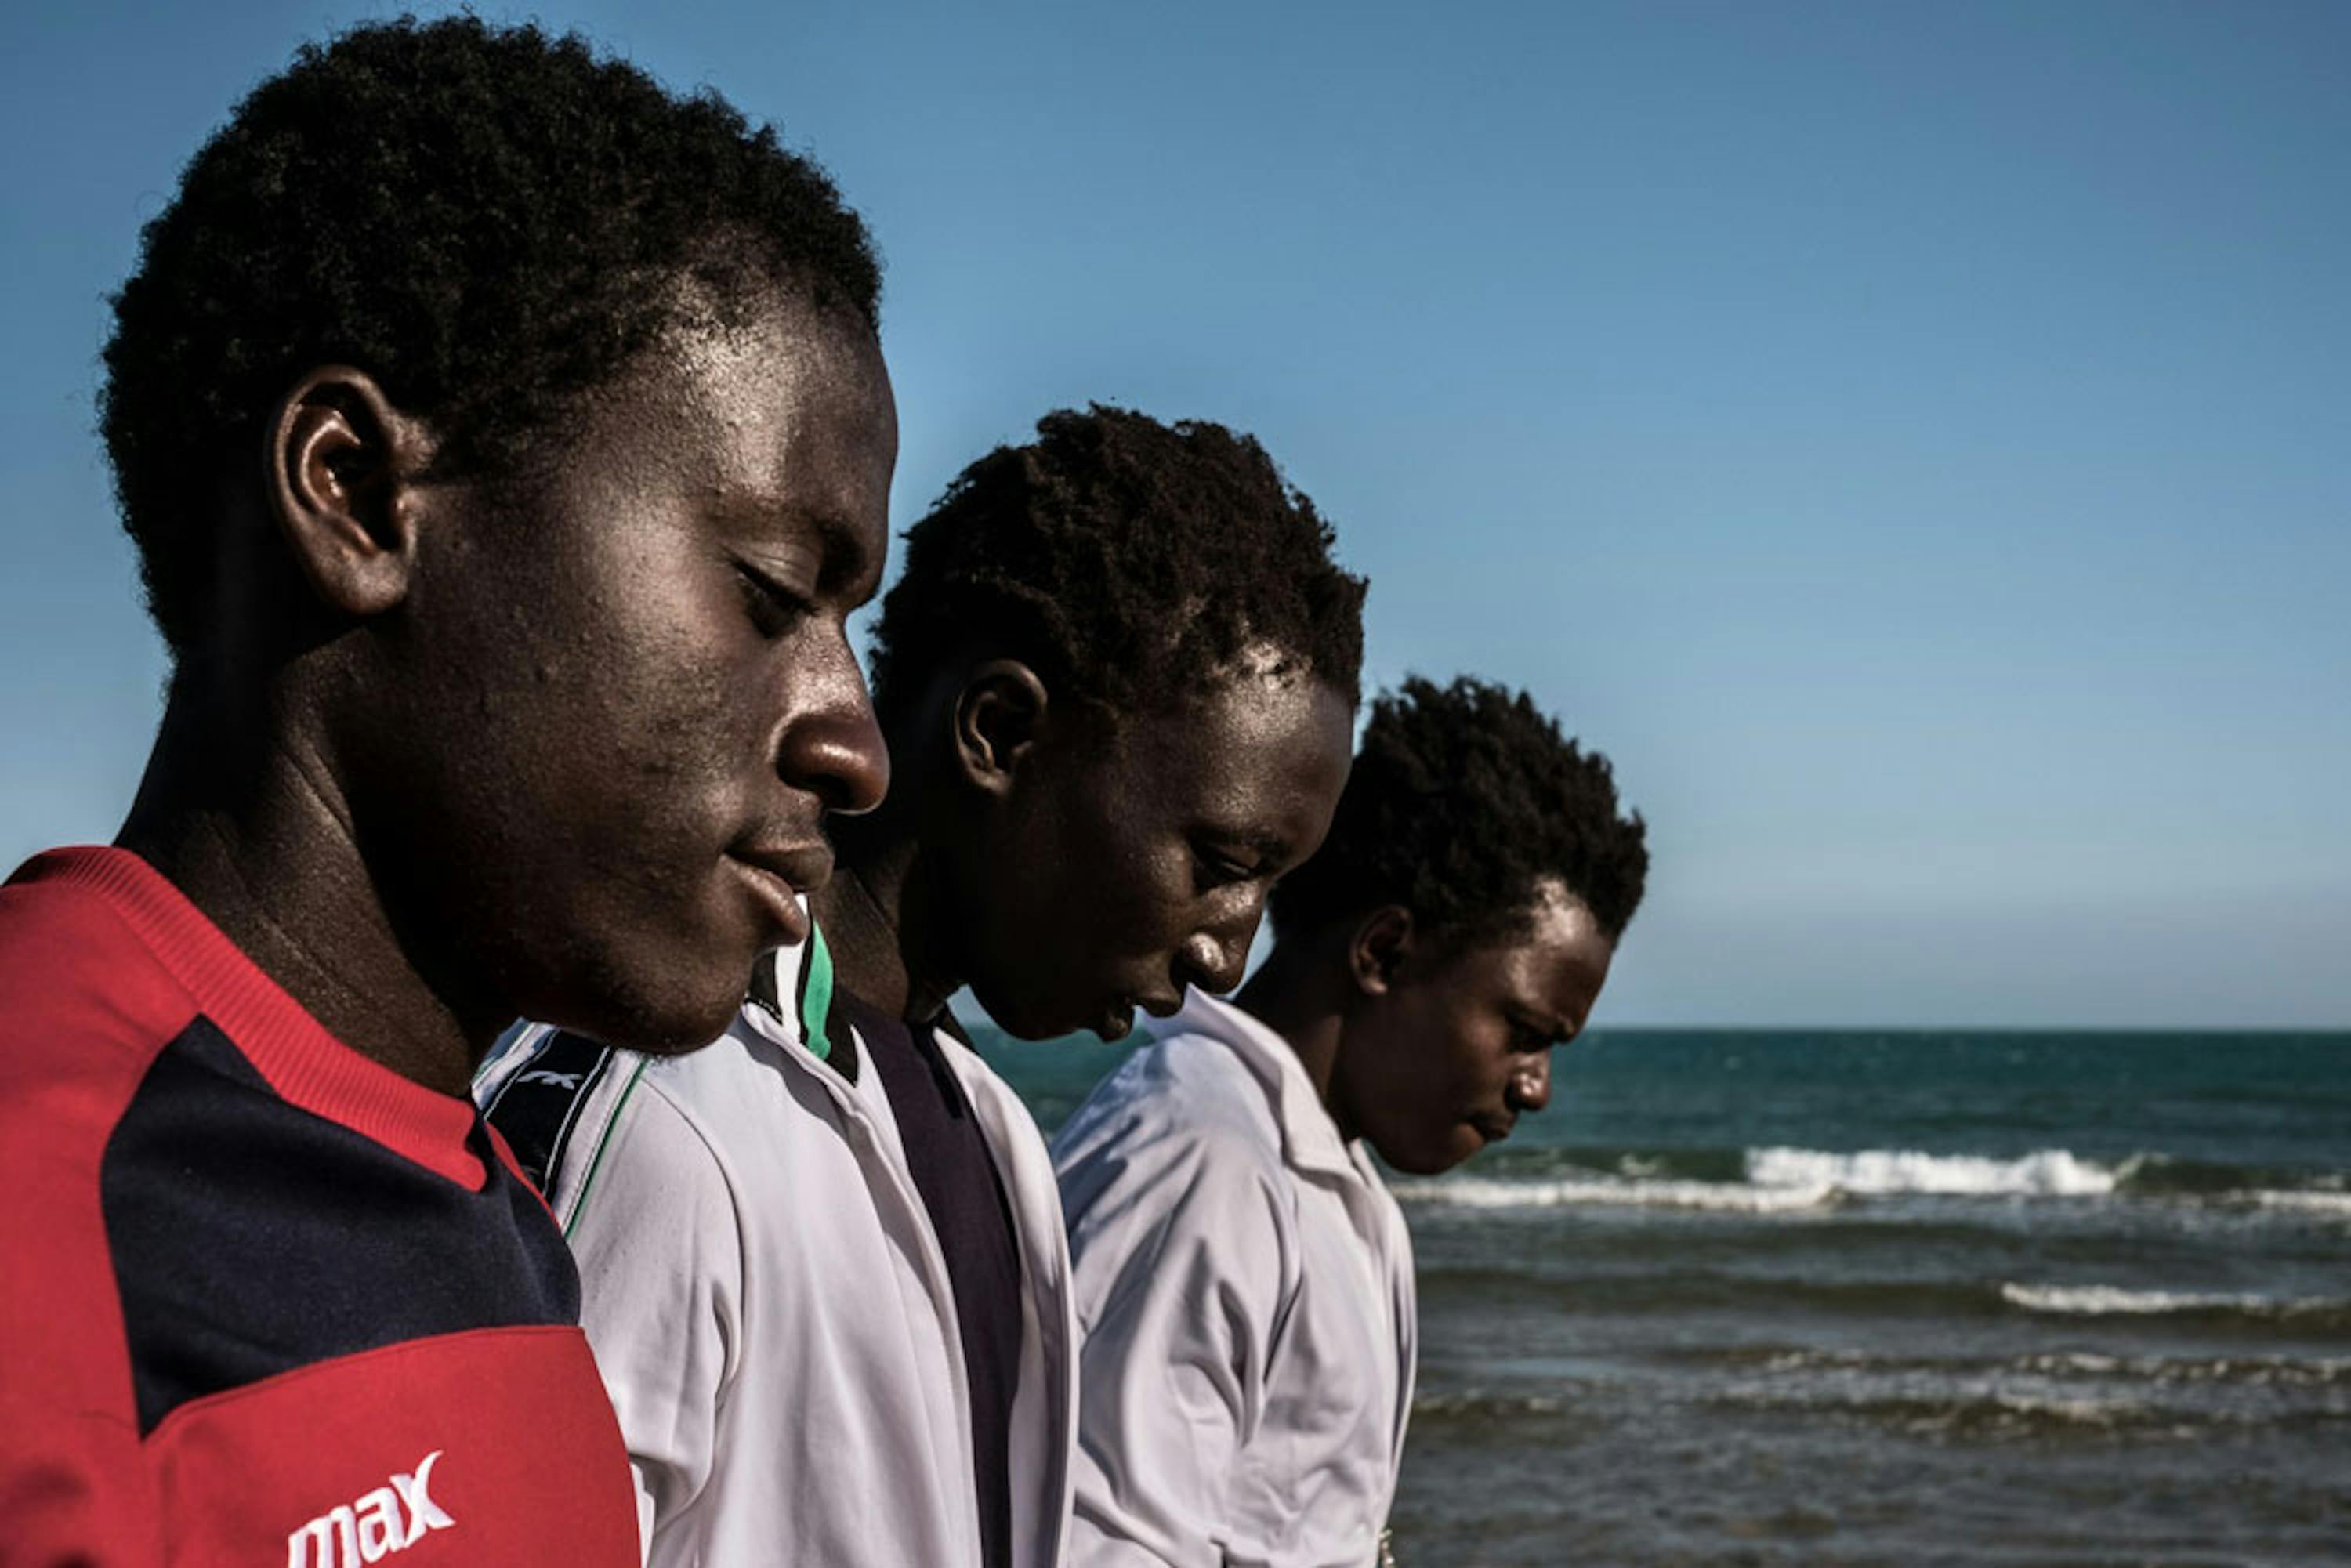 Alieu (17 anni), Fodaoi (14) e Mohammad (17) sono giunti da soli in Italia dal Gambia in cerca di futuro. Foto scattata sul litorale di Pozzallo (RG) - ©UNICEF/UN020035/Gilbertson VII Photo